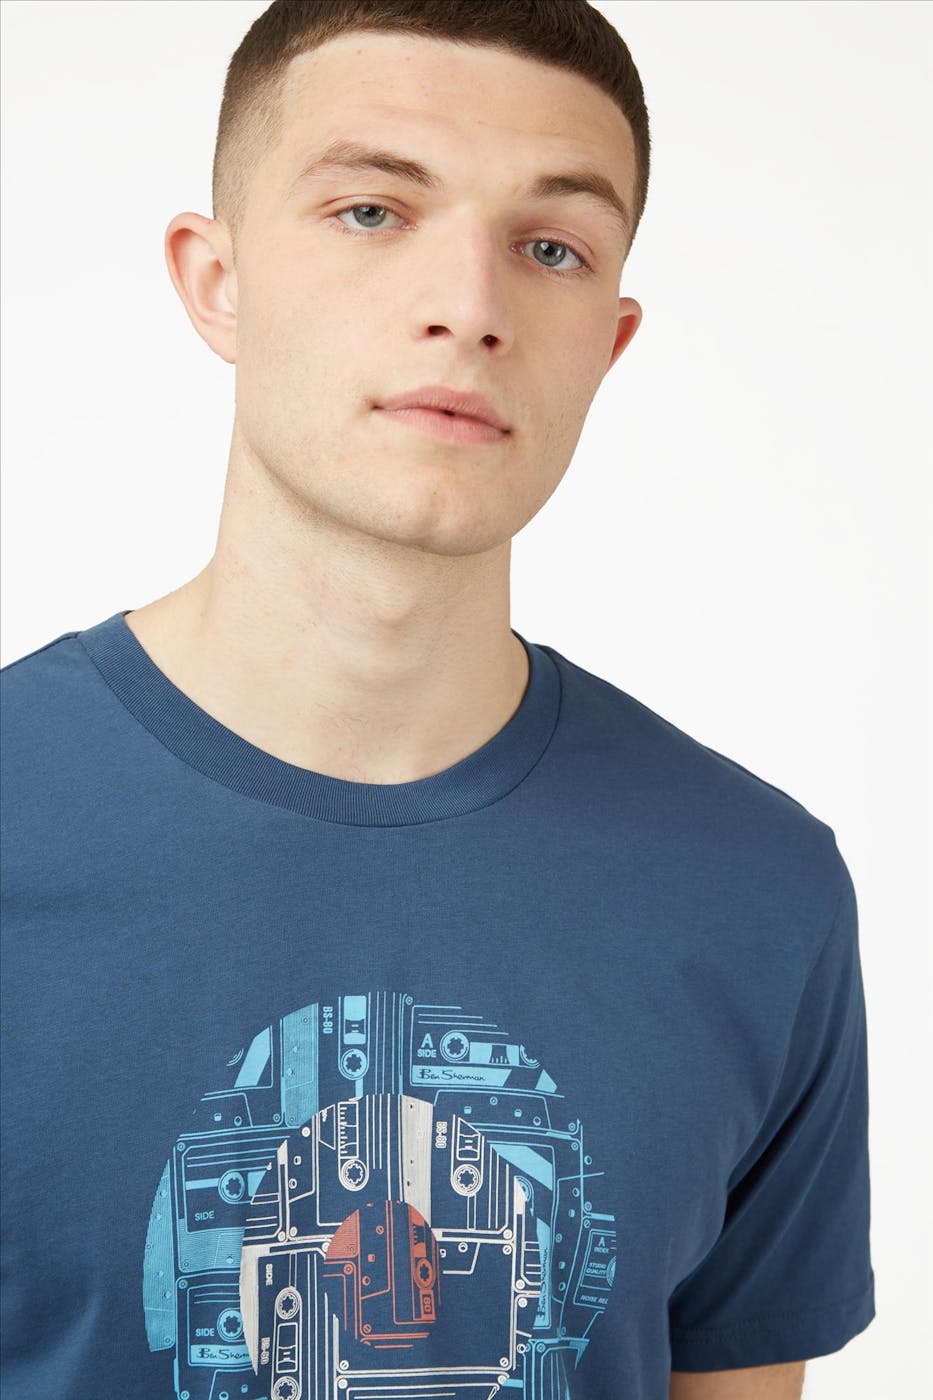 Ben Sherman - Blauwe Target Cassette T-shirt